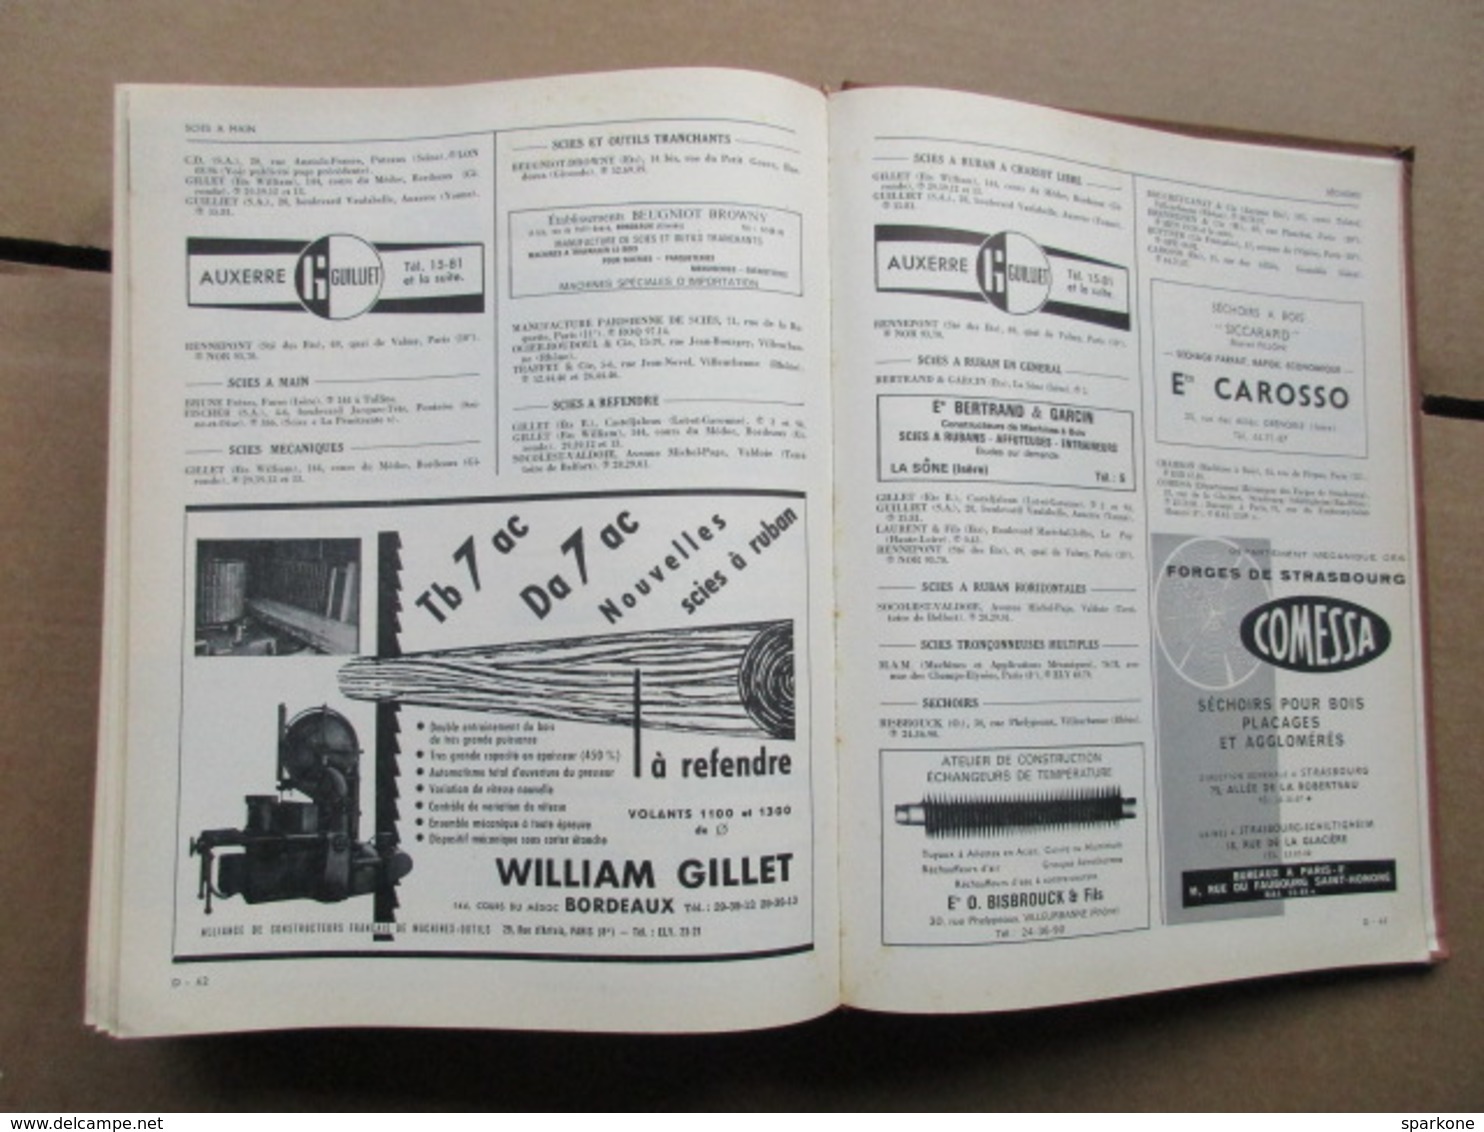 Annuaire général du Commerce et des industries du Bois / Ufap / 1963 - 1964